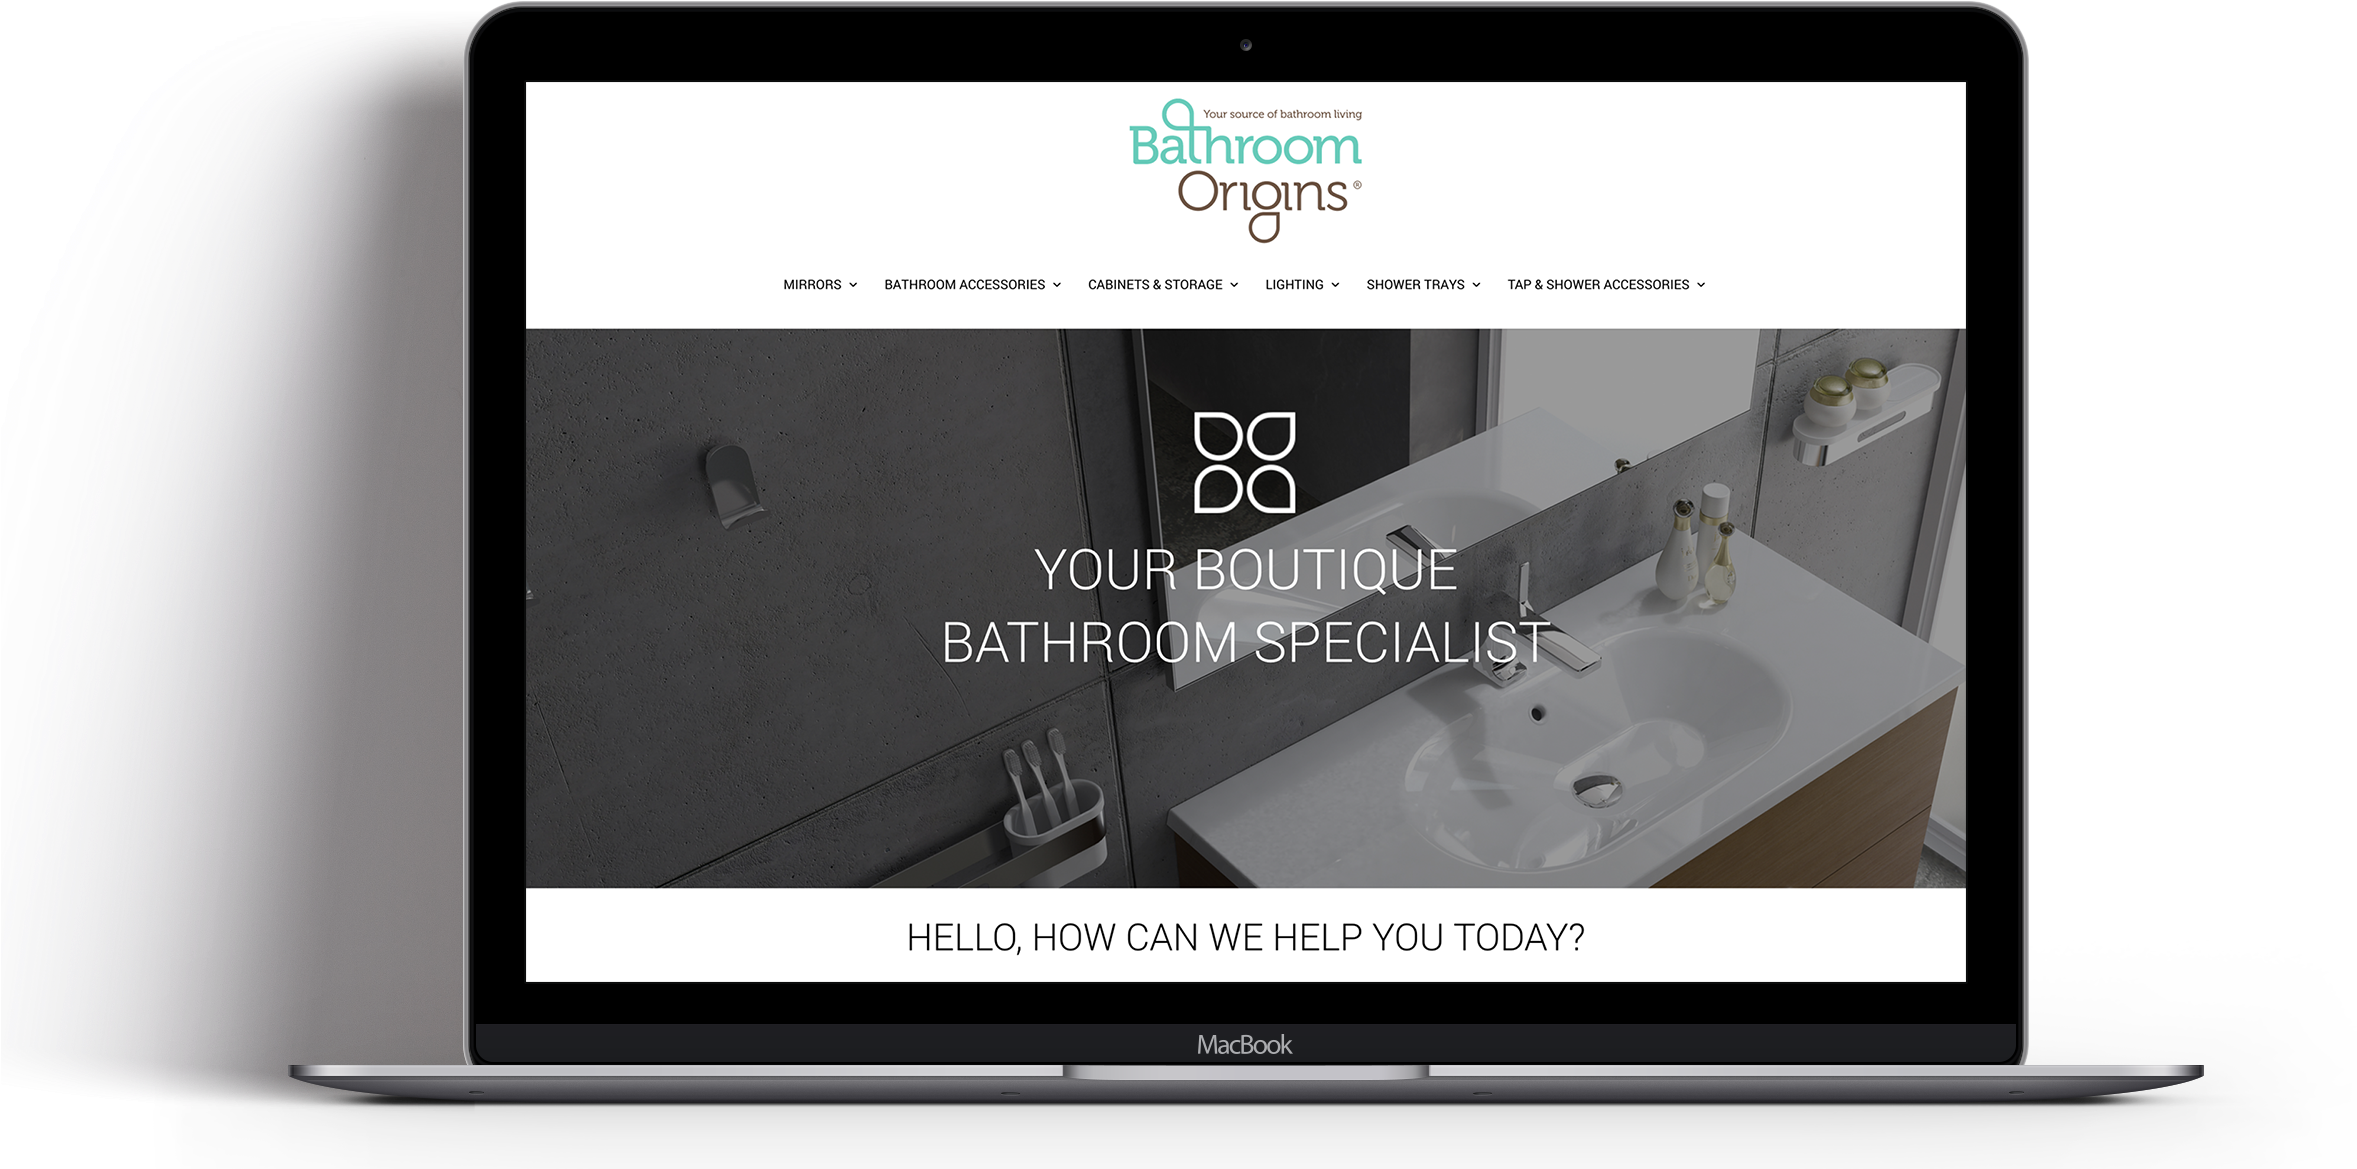 Bathroom Origins Newsletter Image - Led-backlit Lcd Display (2448x1222), Png Download